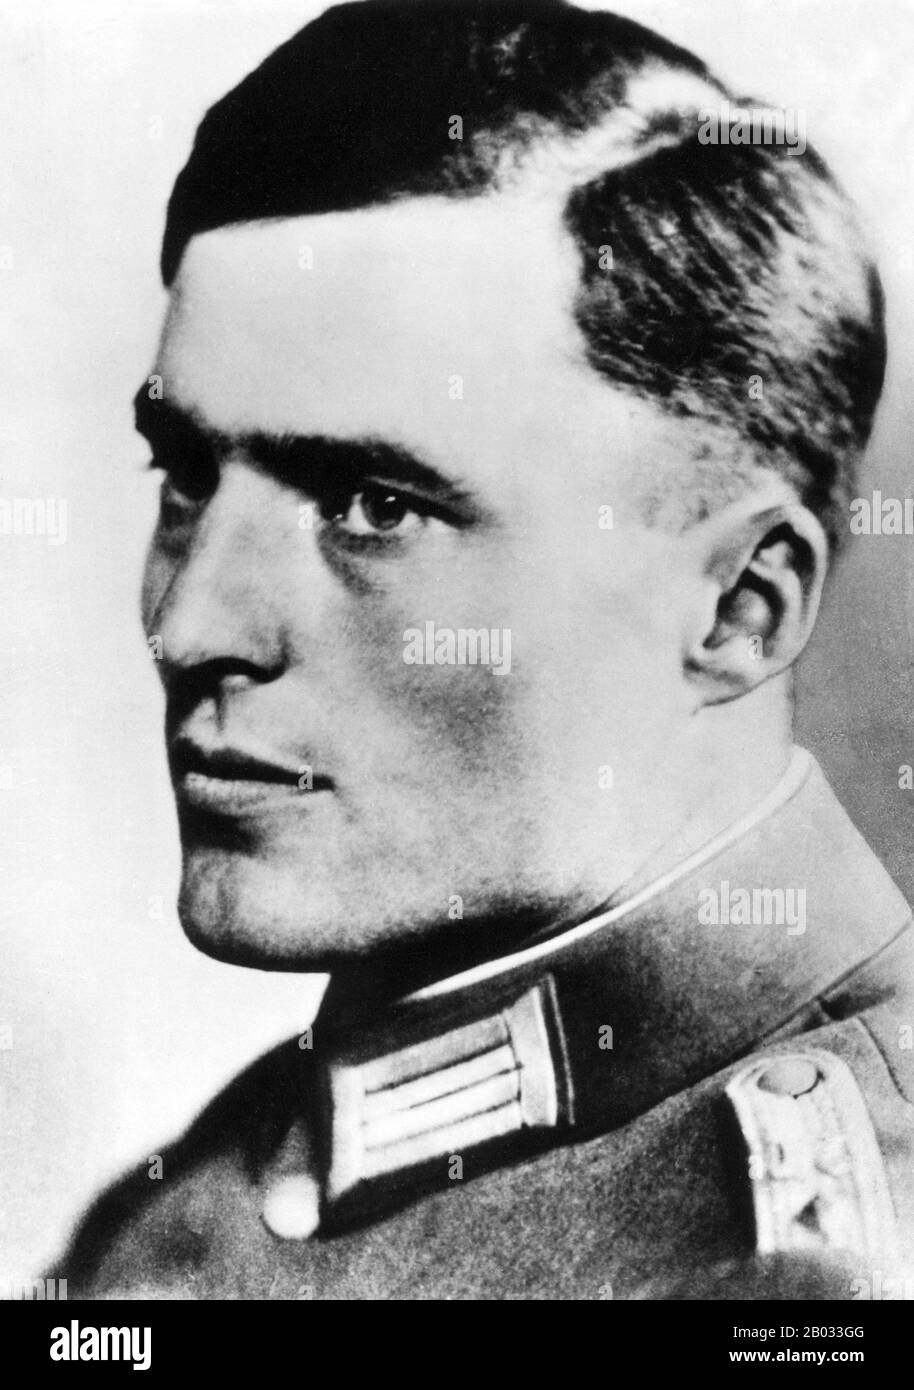 Claus Philipp Maria Schenk Graf von Stauffenberg, communément appelé Claus Schenk Graf von Stauffenberg (15 novembre 1907 – 21 juillet 1944), Était un officier de l'armée allemande et membre de la noblesse allemande traditionnelle qui était l'un des principaux membres du complot manqué du 20 juillet 1944 pour assassiner Adolf Hitler et retirer le parti nazi du pouvoir. Avec Henning von Tresckow et Hans Oster, il était l'un des personnages centraux du mouvement de Résistance allemand au sein de la Wehrmacht. Pour son implication dans le mouvement, il a été exécuté par le peloton de tir peu après la tentative échouée connue sous le nom de Banque D'Images